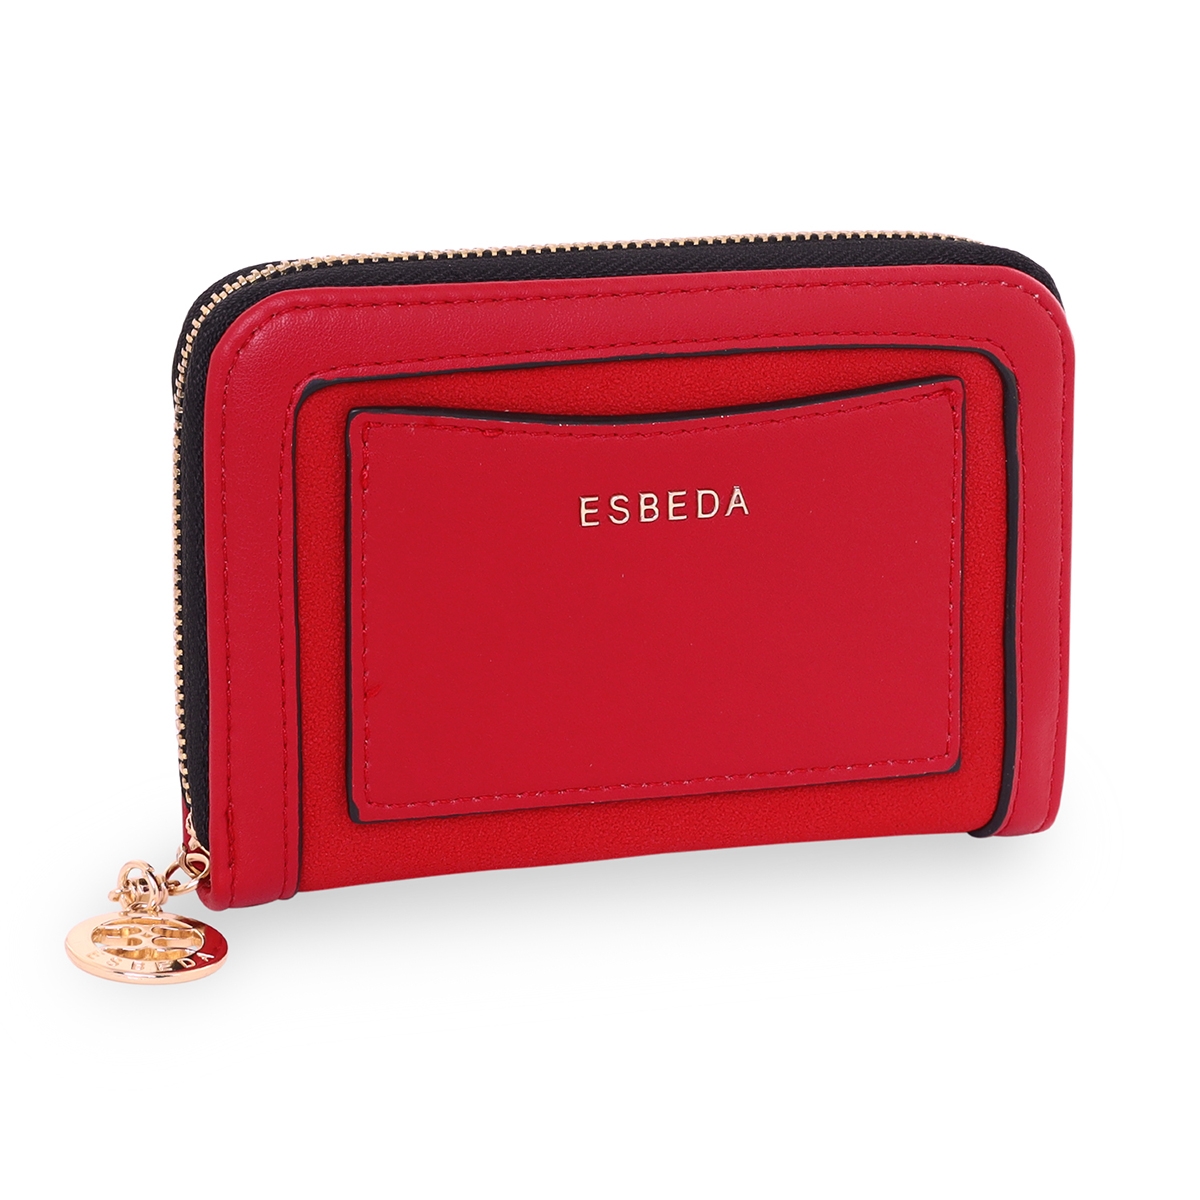 Esbeda Handbags - Buy Esbeda Handbags online in India